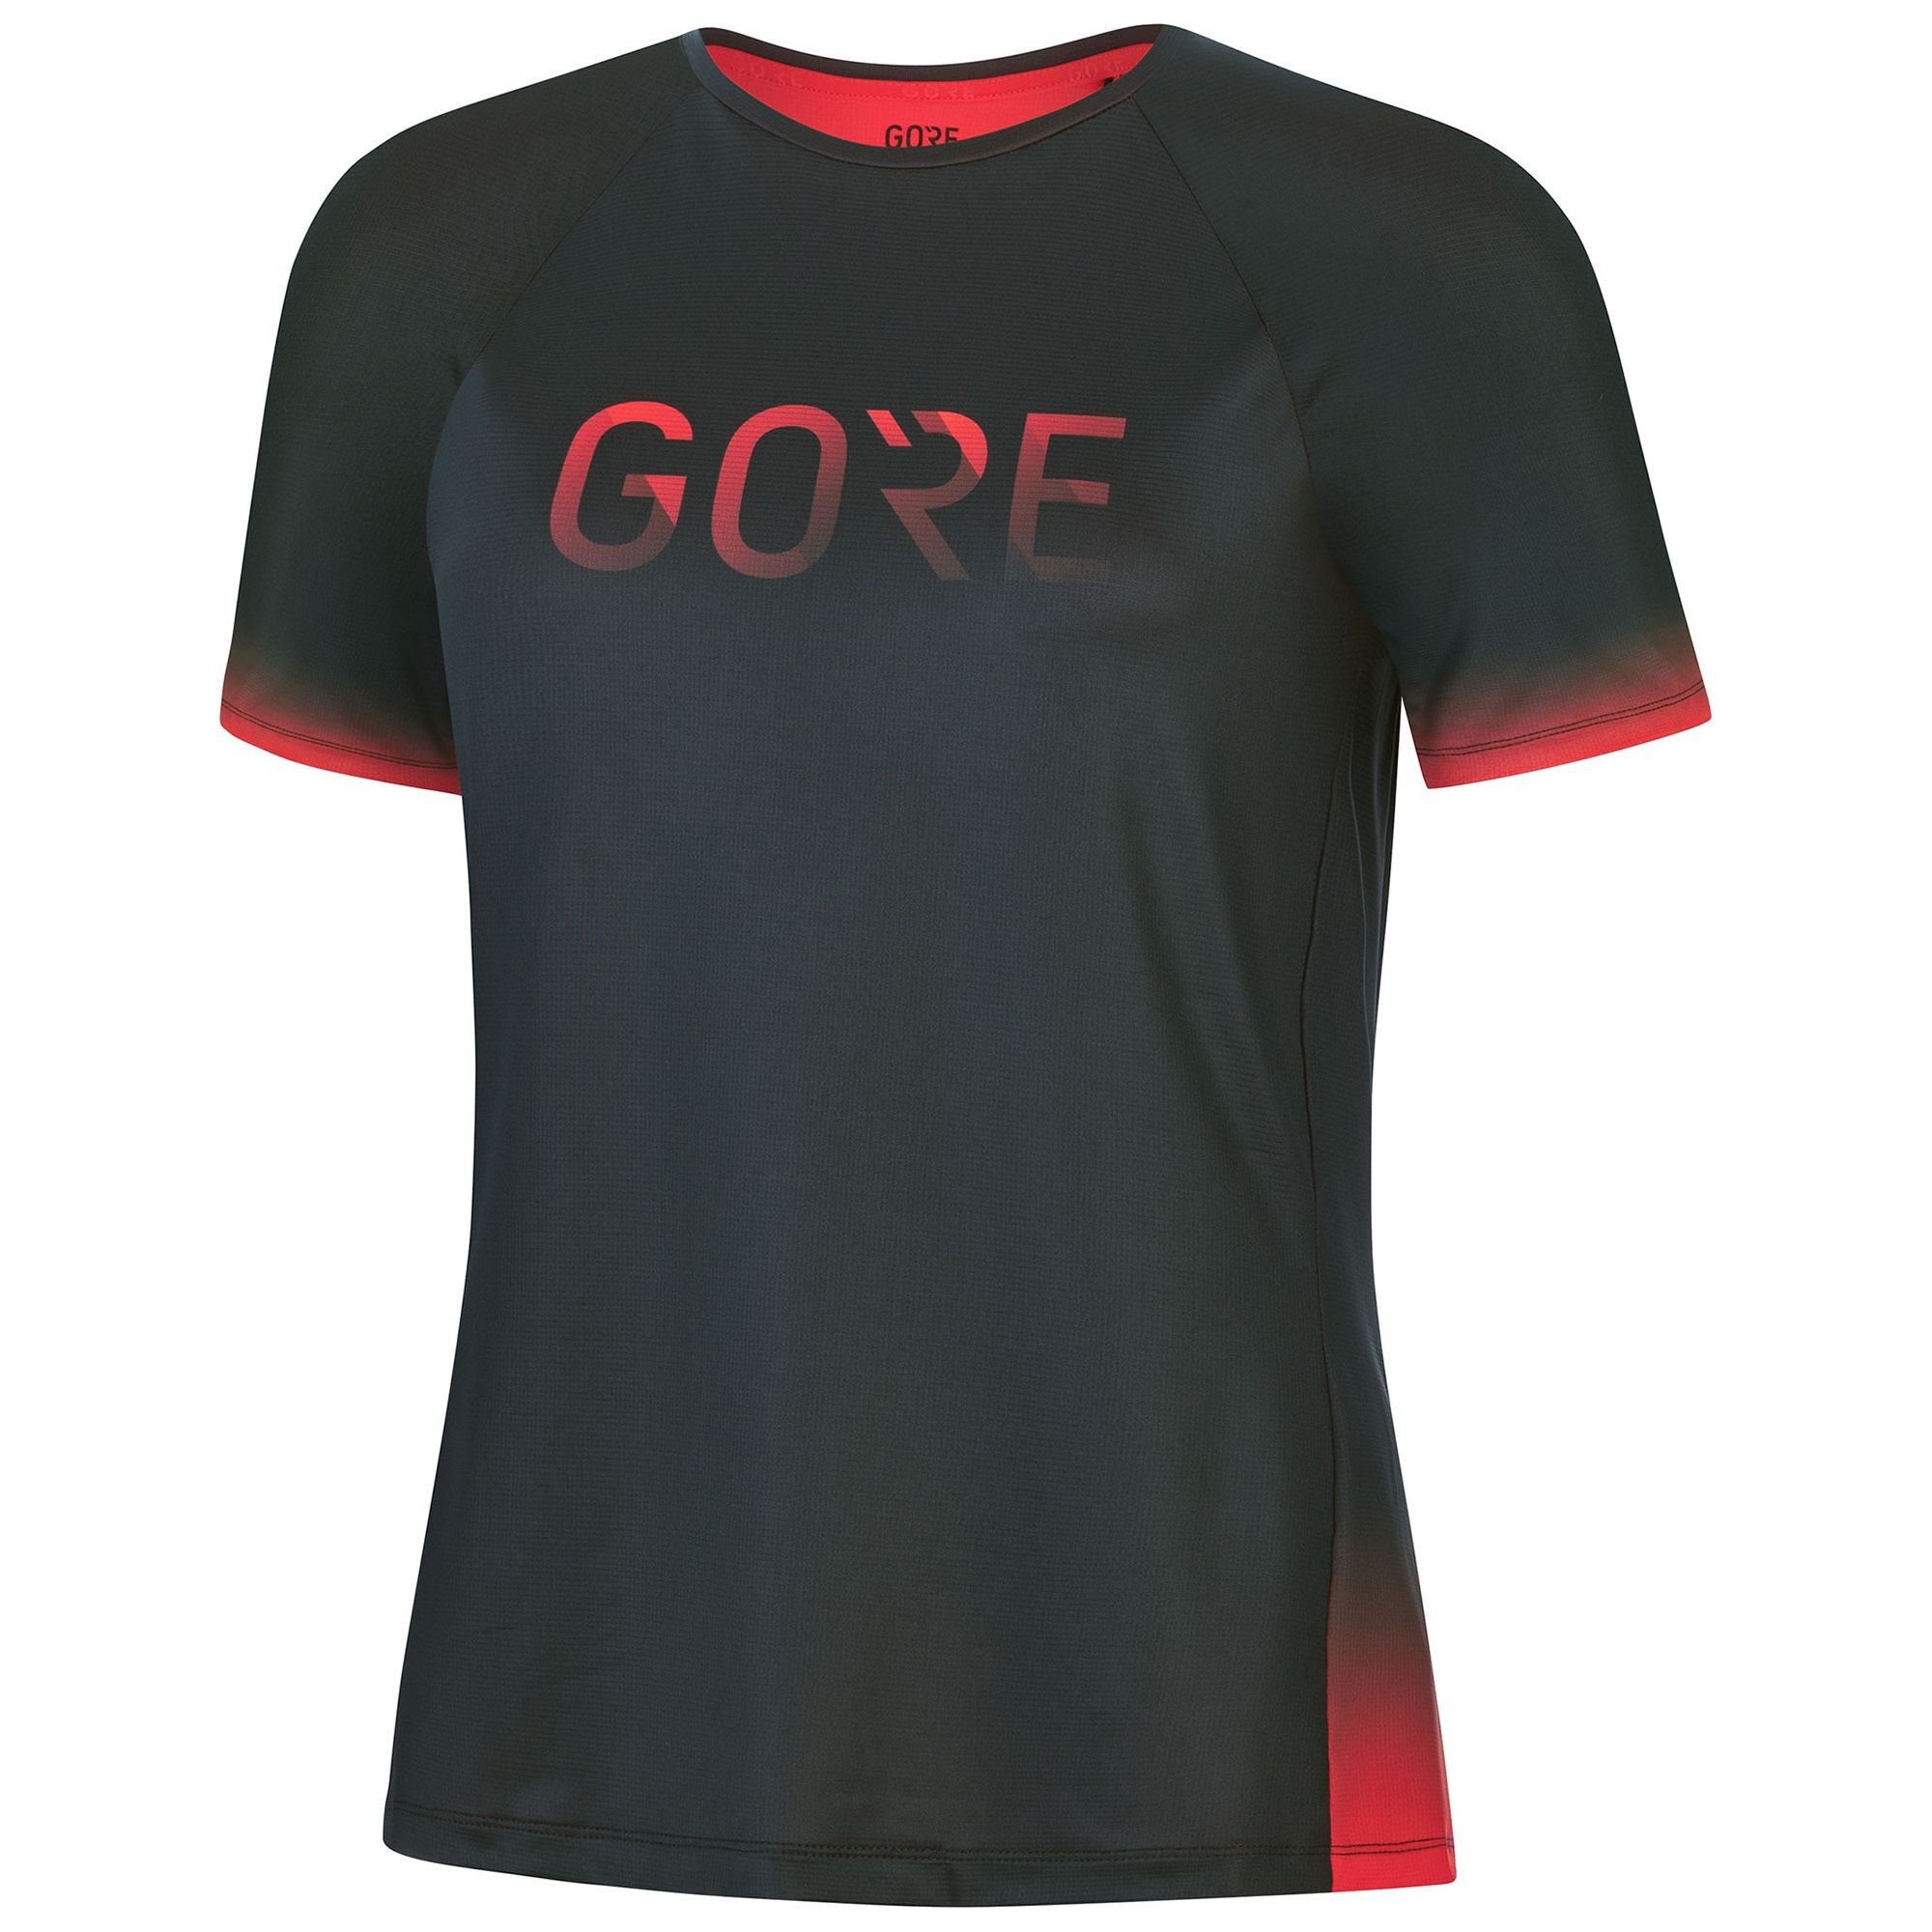 Gore Wear Devotion Shirt - T-shirt - Donna